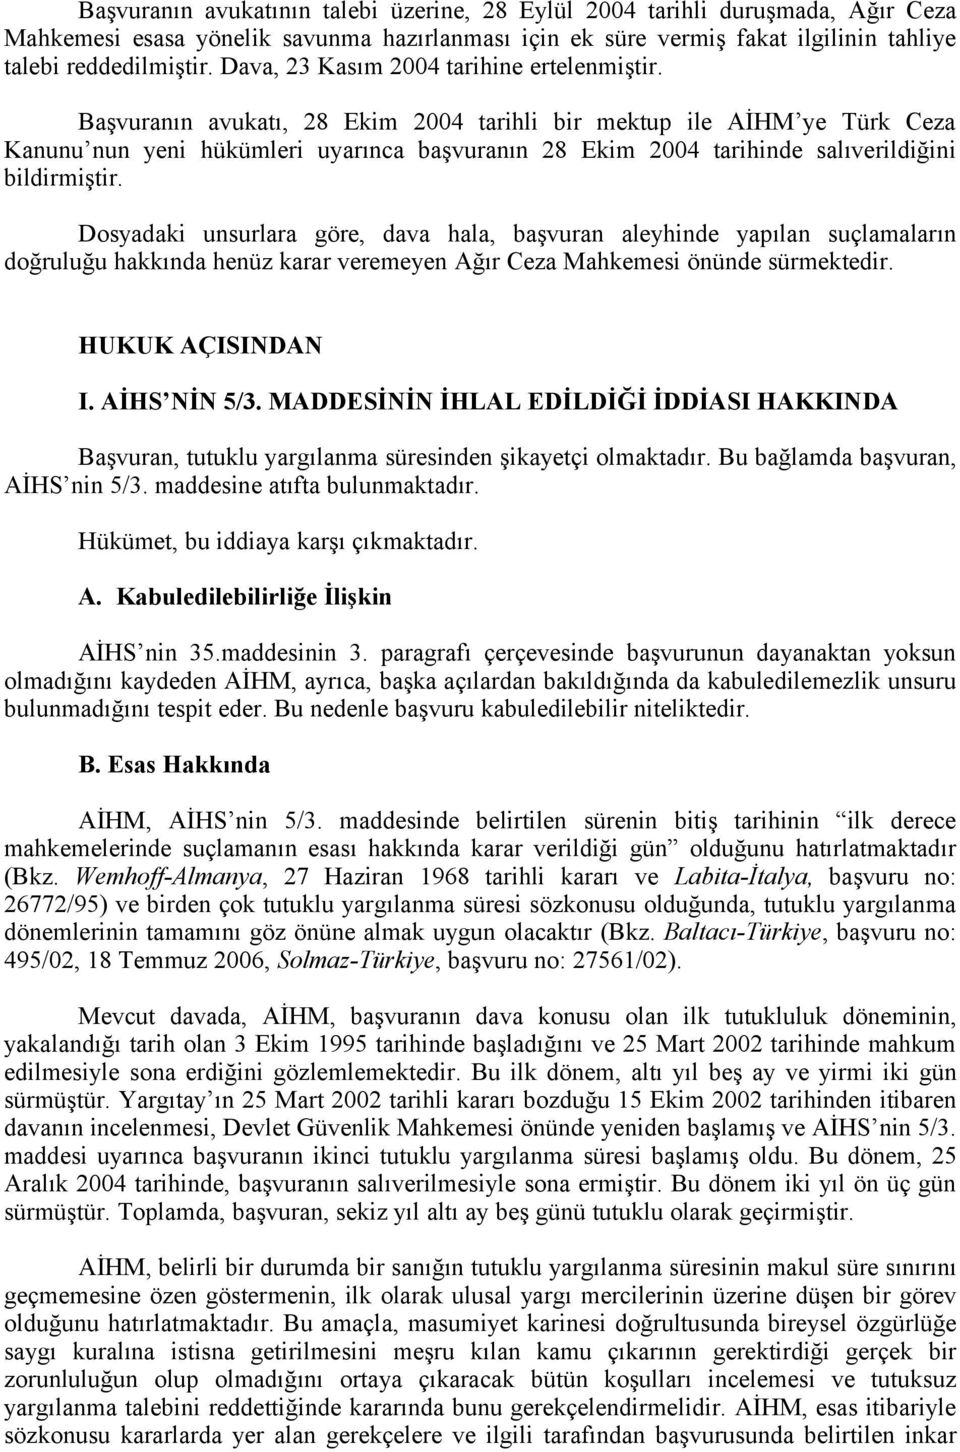 Başvuranın avukatı, 28 Ekim 2004 tarihli bir mektup ile AİHM ye Türk Ceza Kanunu nun yeni hükümleri uyarınca başvuranın 28 Ekim 2004 tarihinde salıverildiğini bildirmiştir.